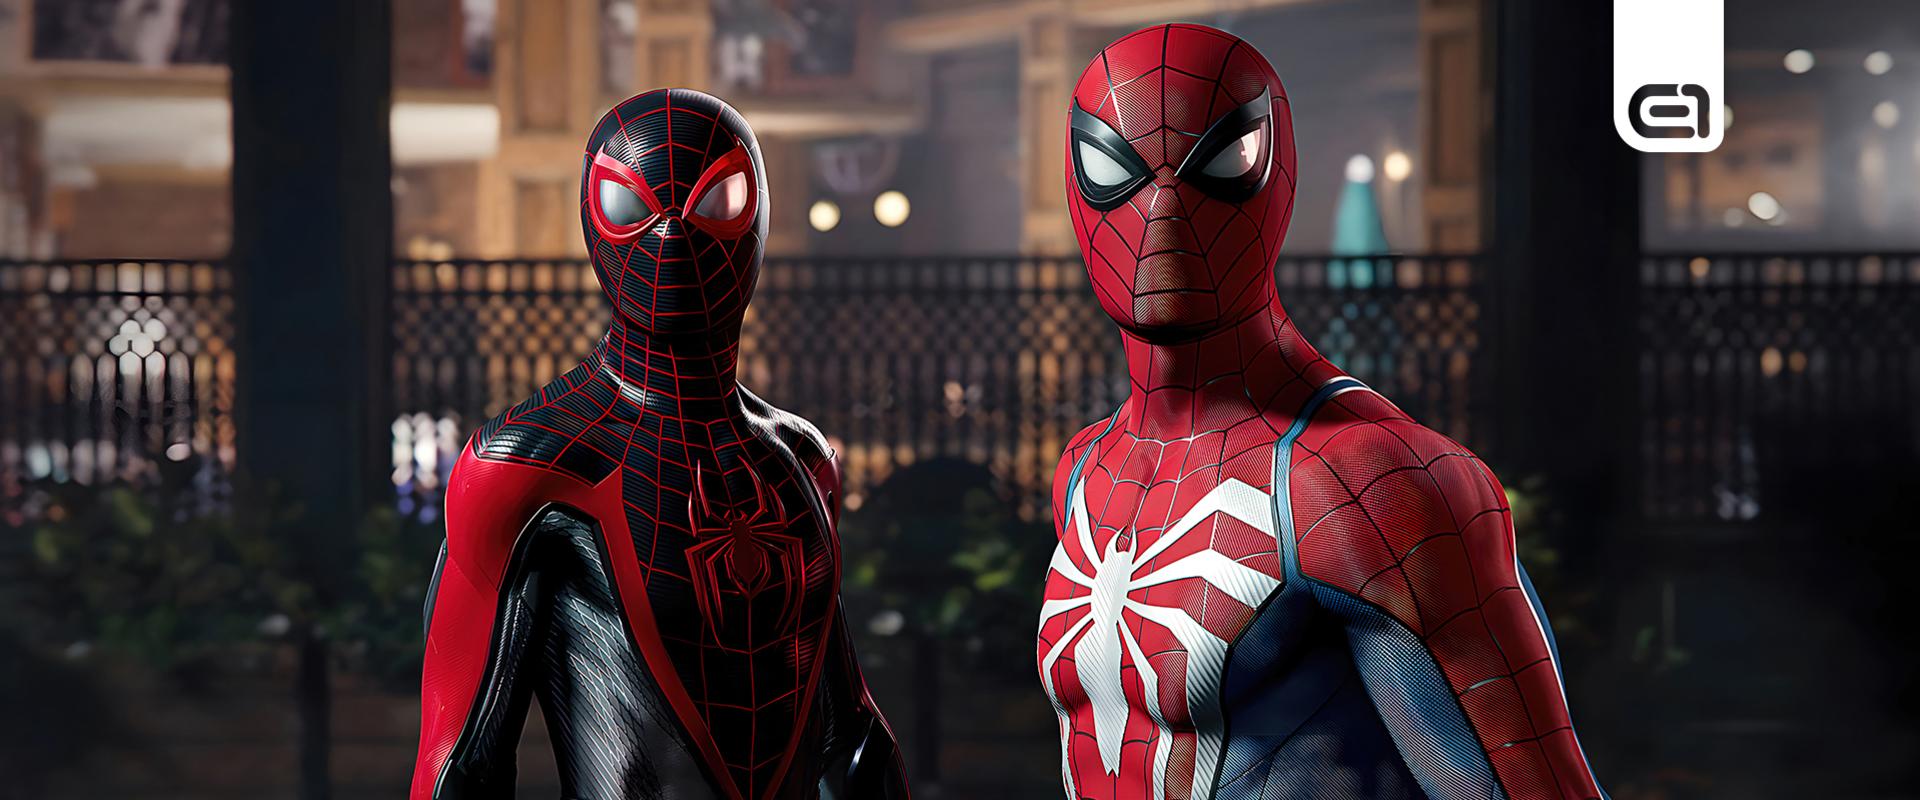 Hamarosan elő lehet rendelni a Marvel's Spider-Man 2-t, ami kapott Gyűjtői kiadást is!